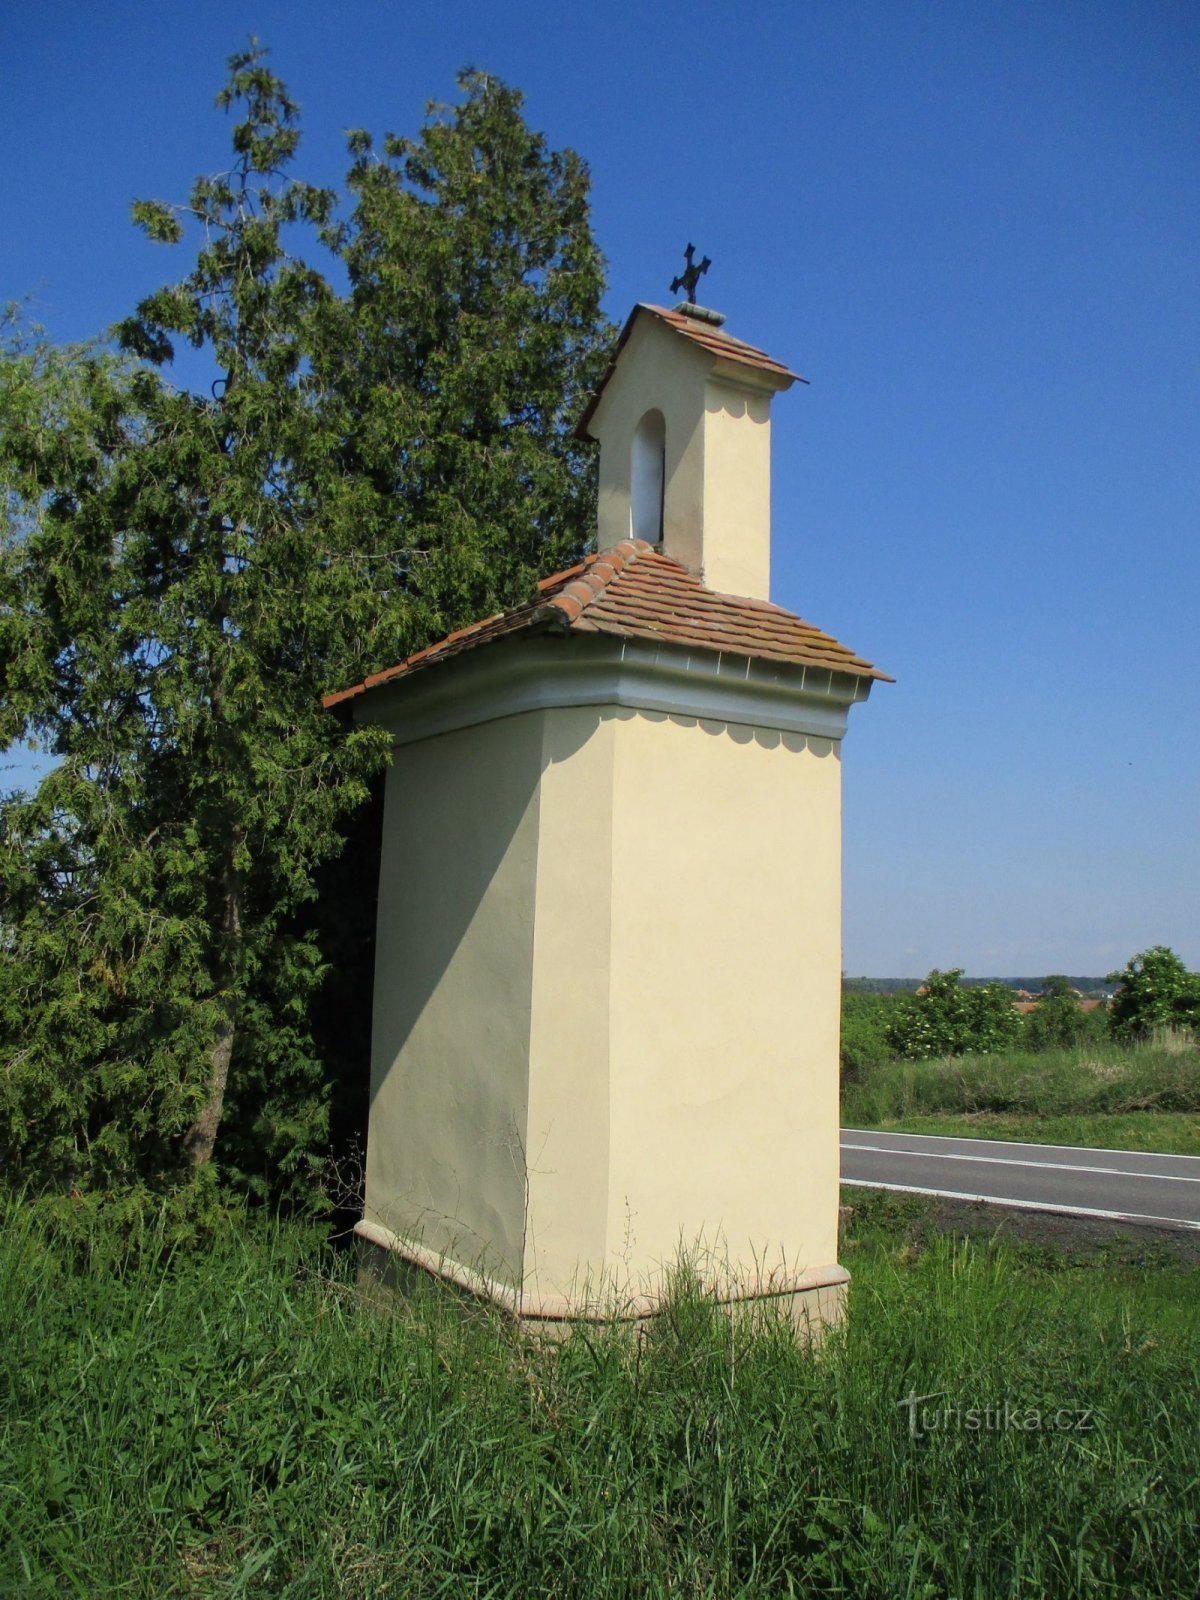 Chapelle sur la route de Holice (Horní Ředice, 16.5.2020/XNUMX/XNUMX)